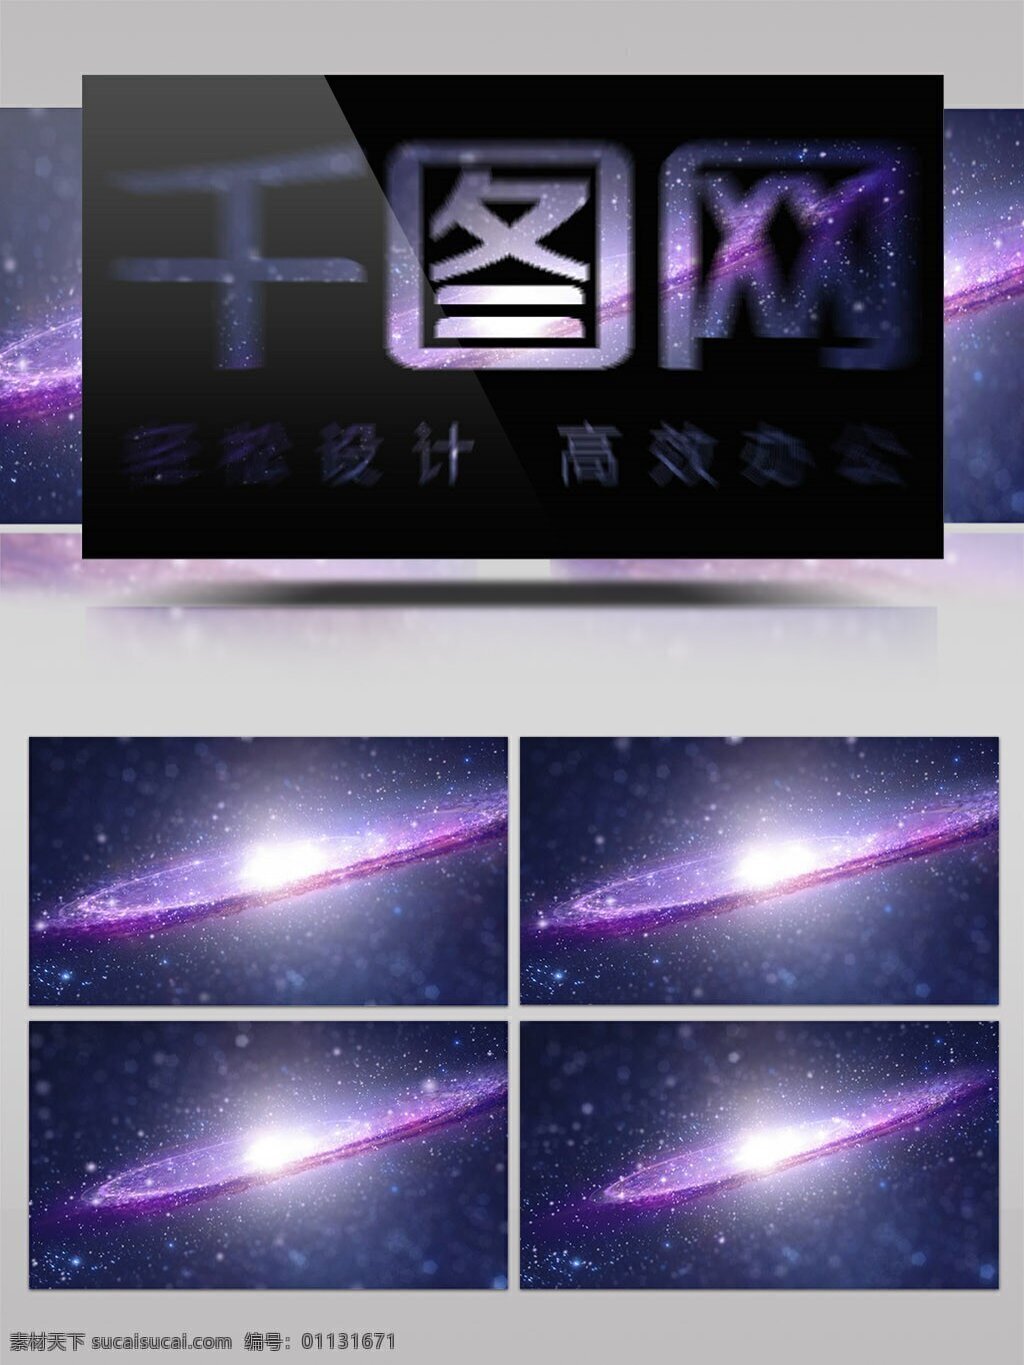 炫 美 紫色 星河 logo 标志 展示 开场 ae 模板 星空 唯美 星海 浪漫 宇宙